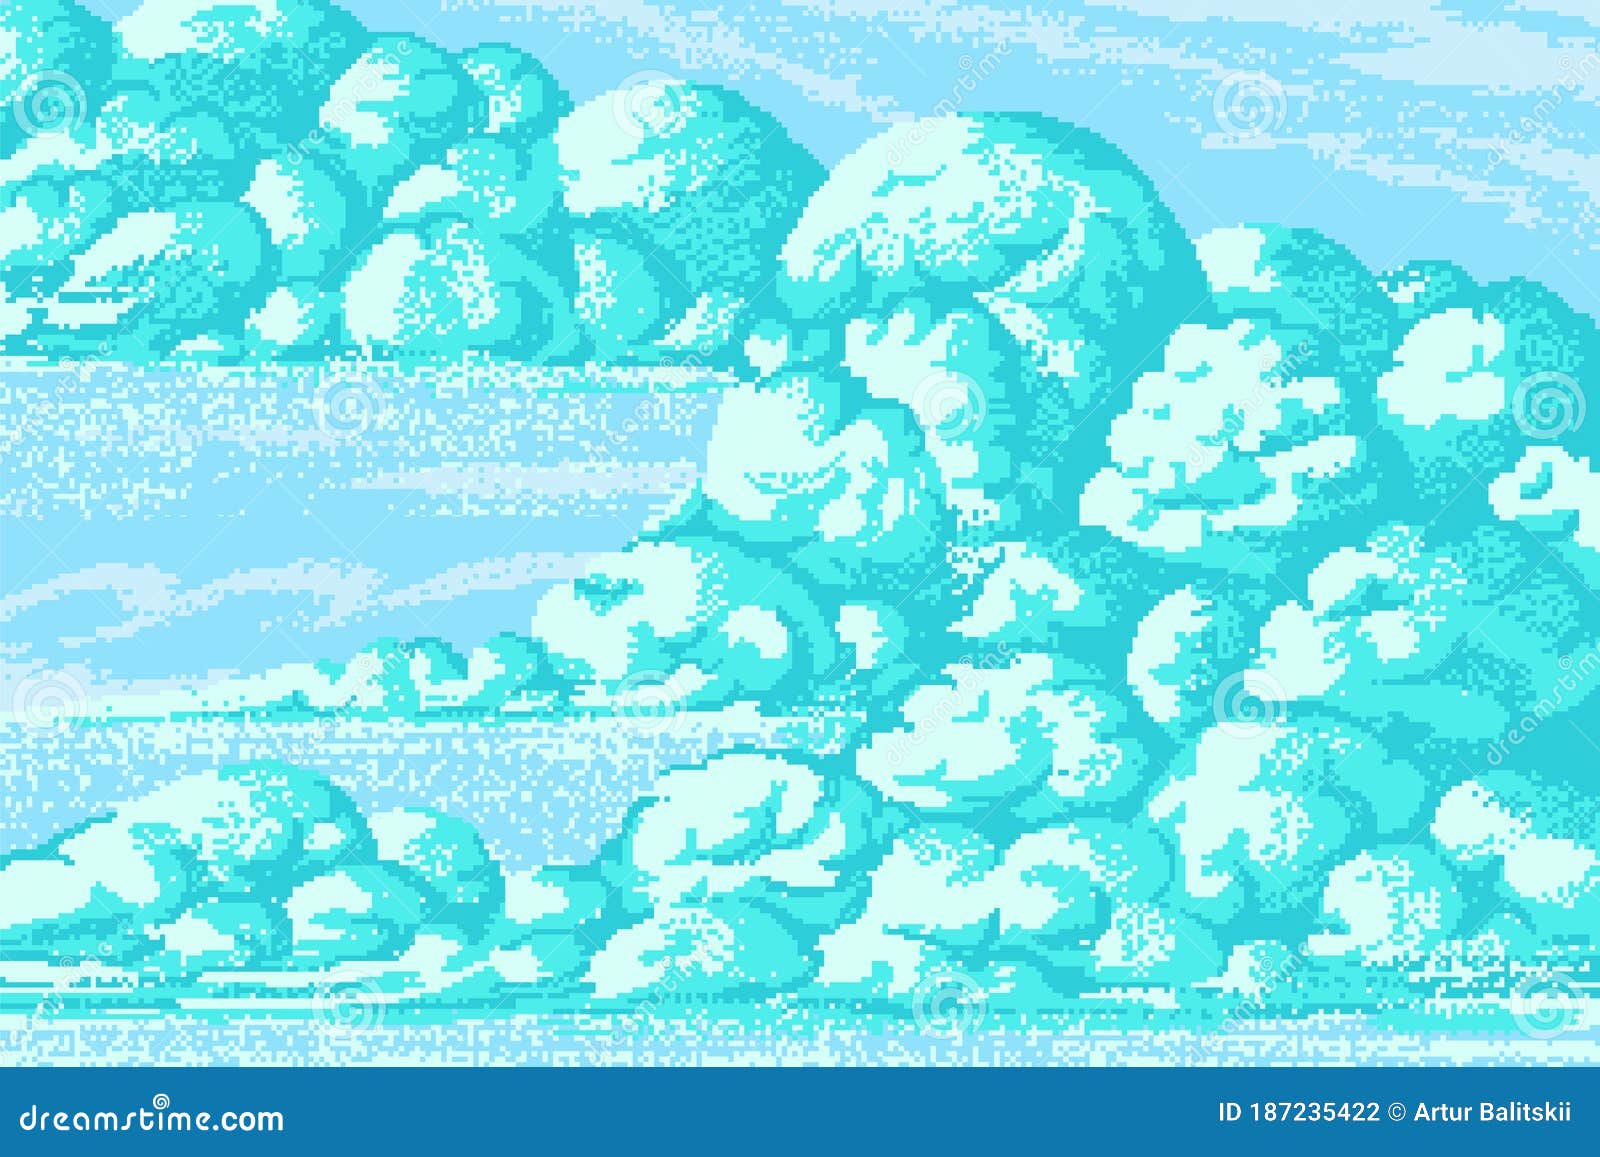 Hình ảnh pixel mây: Hãy nhìn lên bầu trời xanh ngắt với những đám mây pixel hoàn hảo. Từng đường nét tỉ mỉ và màu sắc đẹp mắt sẽ khiến bạn phải trầm trồ ngưỡng mộ. Cùng khám phá thêm các vật thể 8 bit độc đáo trong tác phẩm này.